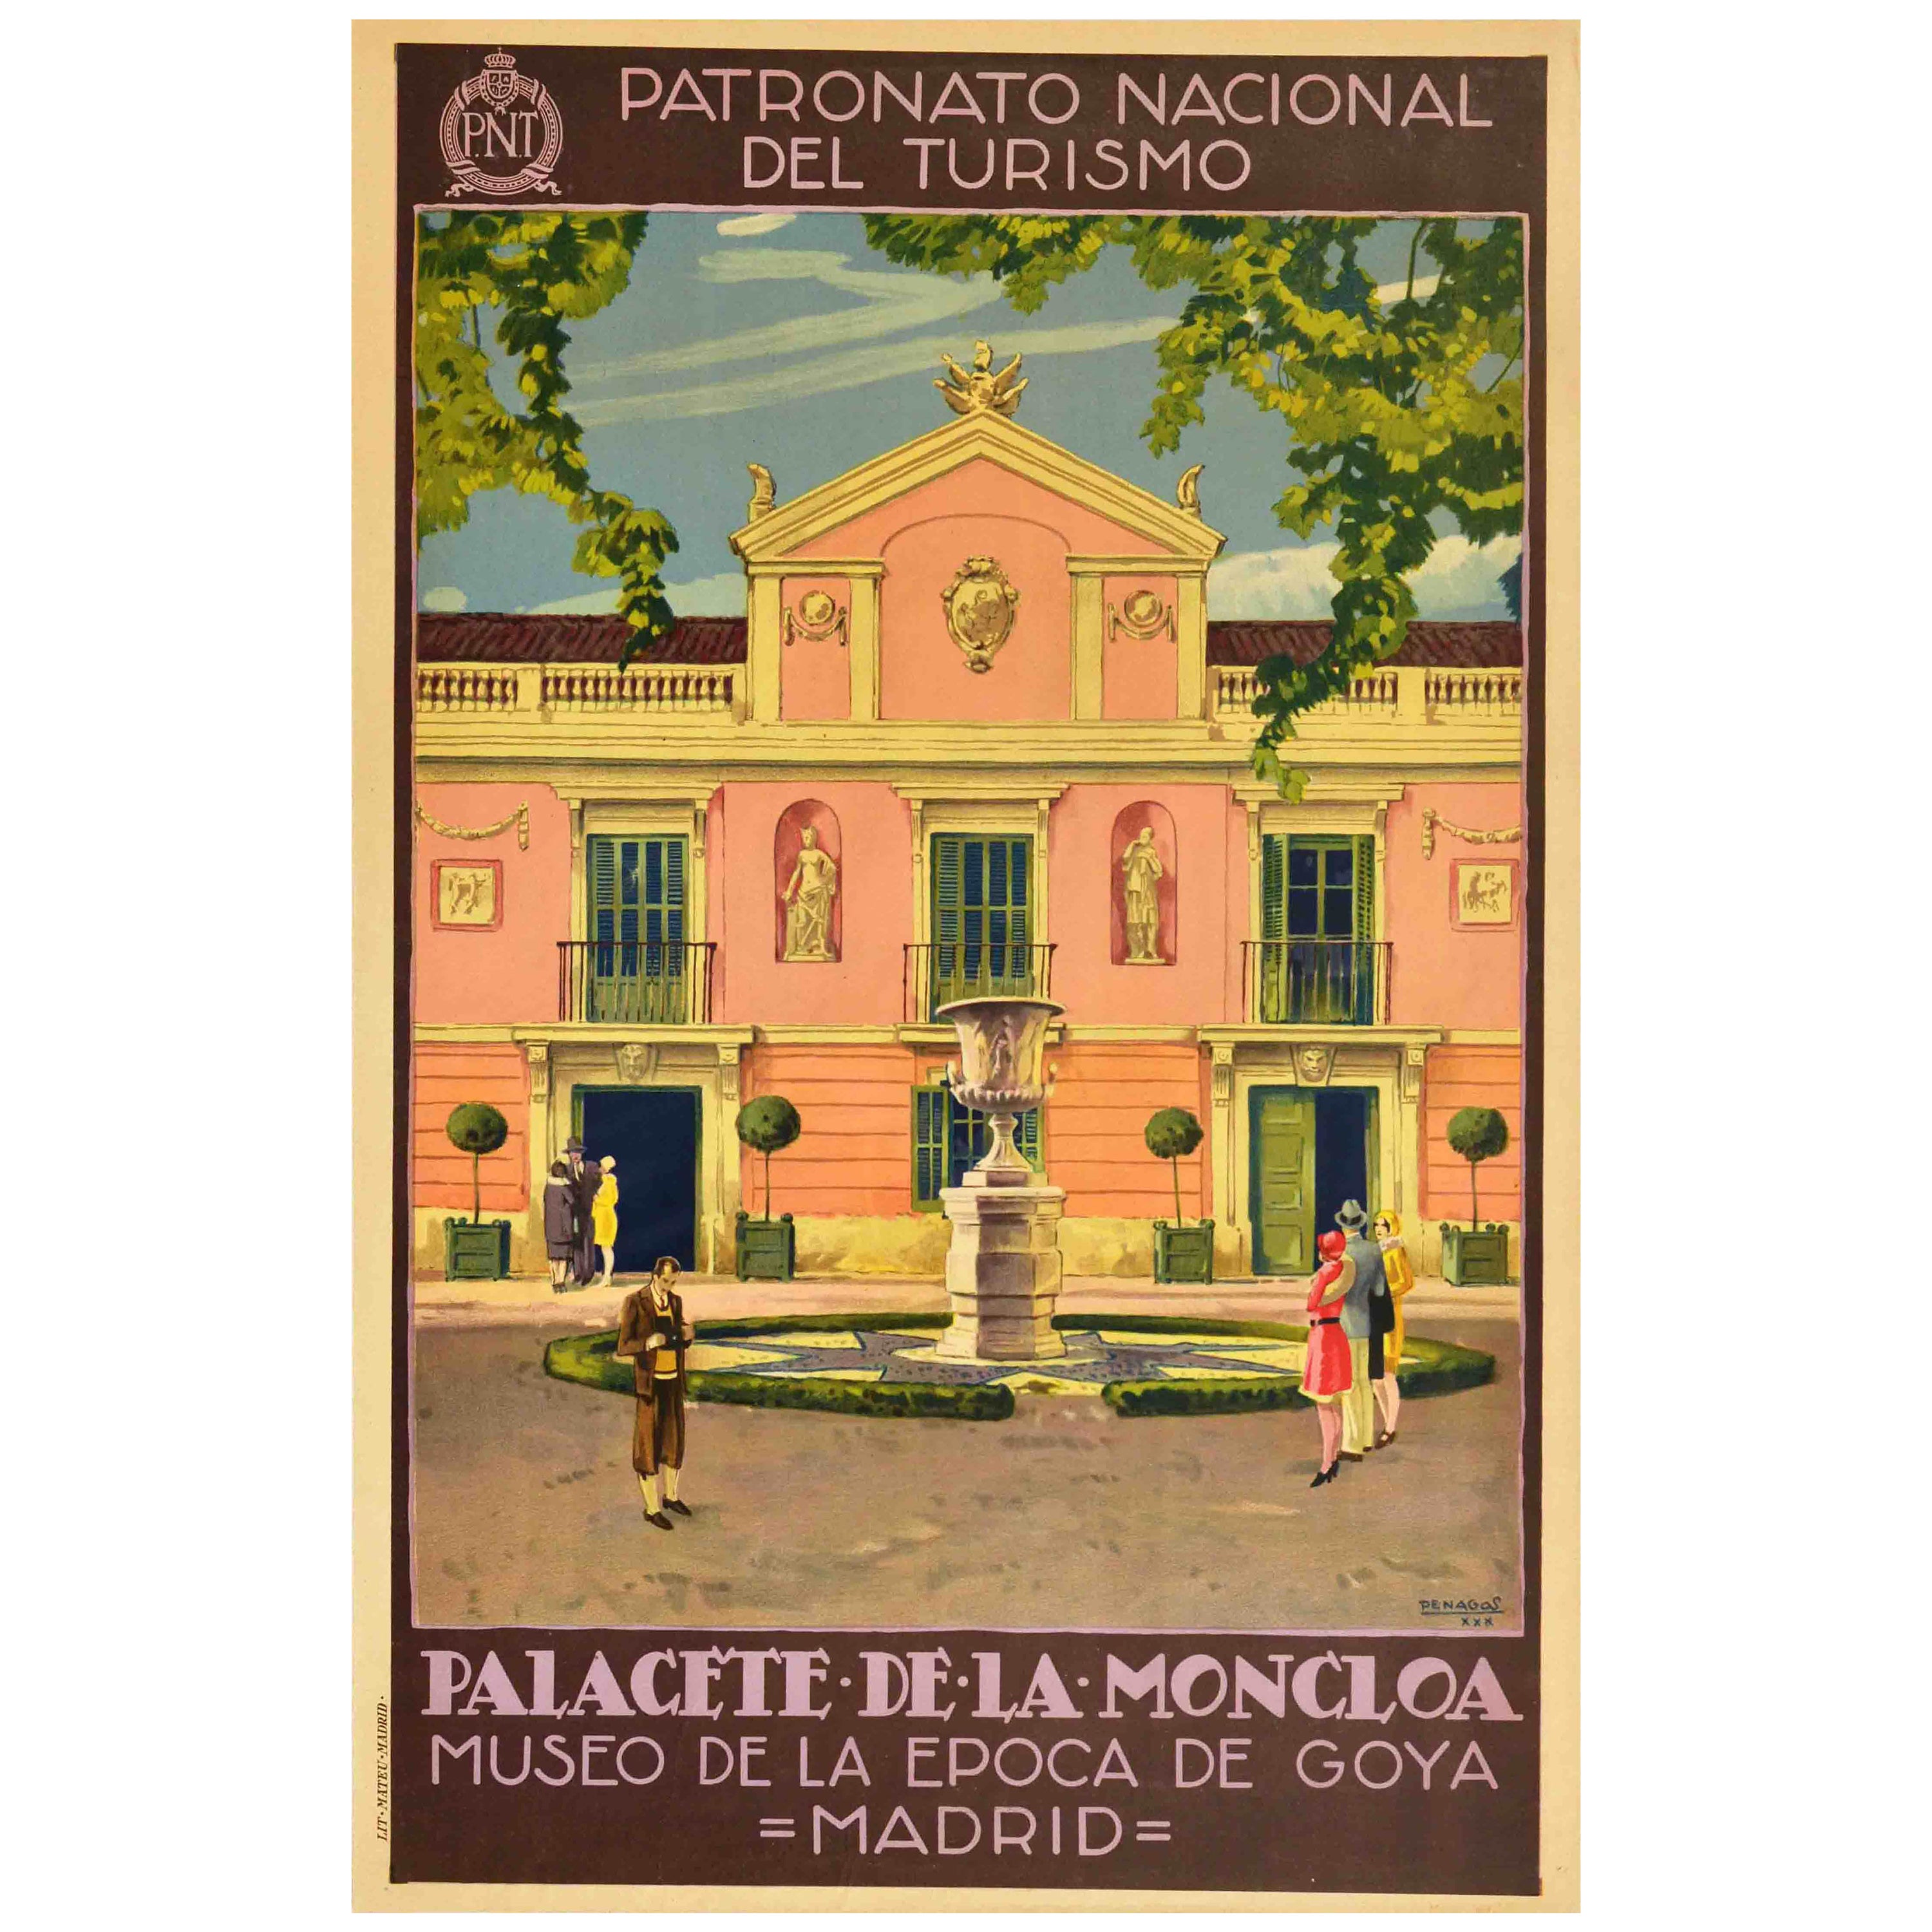 Original Vintage Travel Poster Palacete De La Moncloa Palace PNT Madrid Spain